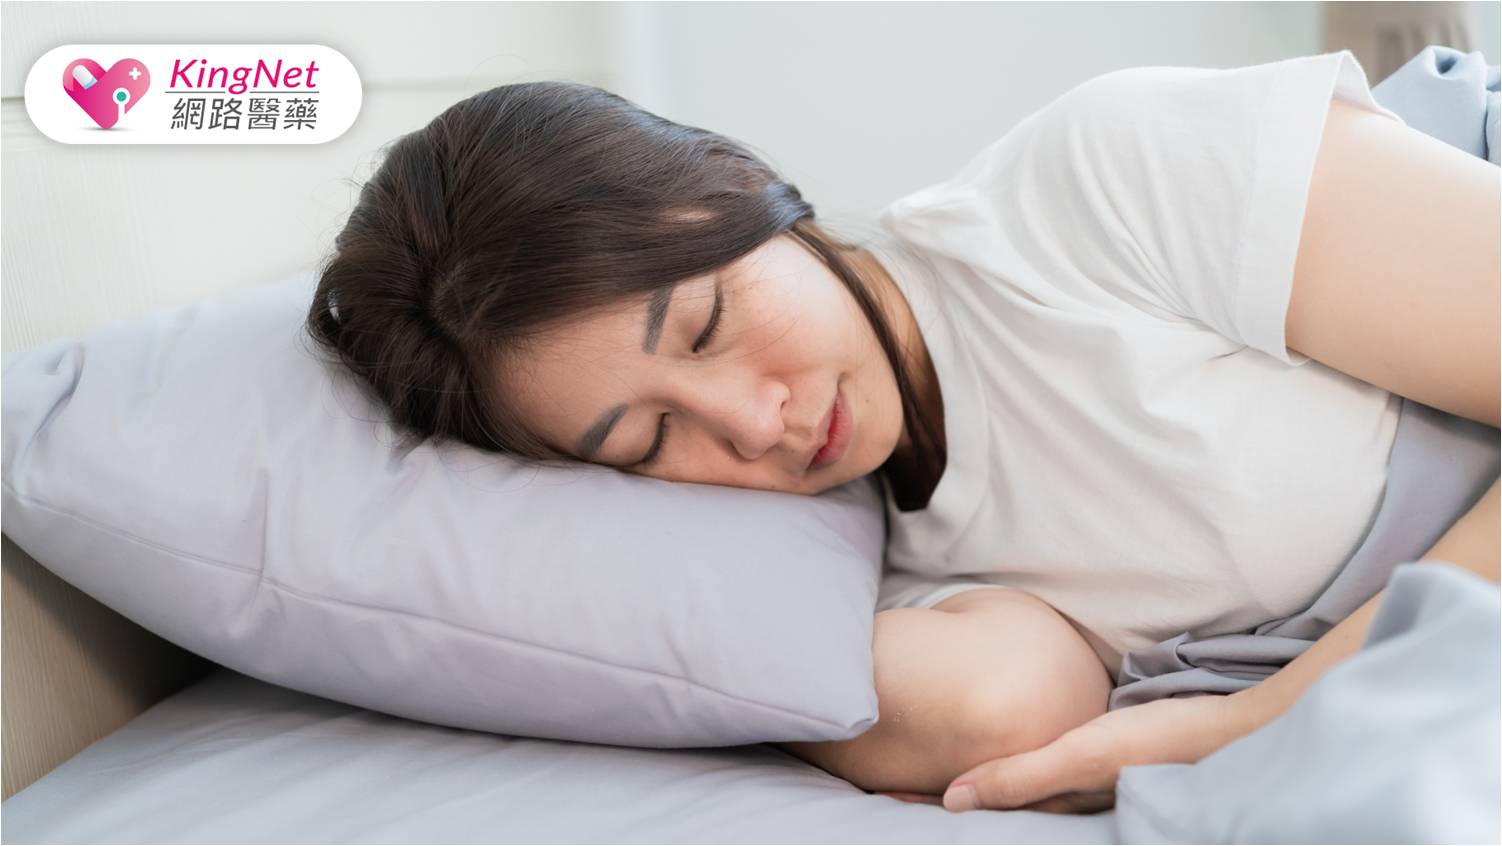 總是越睡越累？可能是「睡眠呼吸中止症」影響睡眠品質